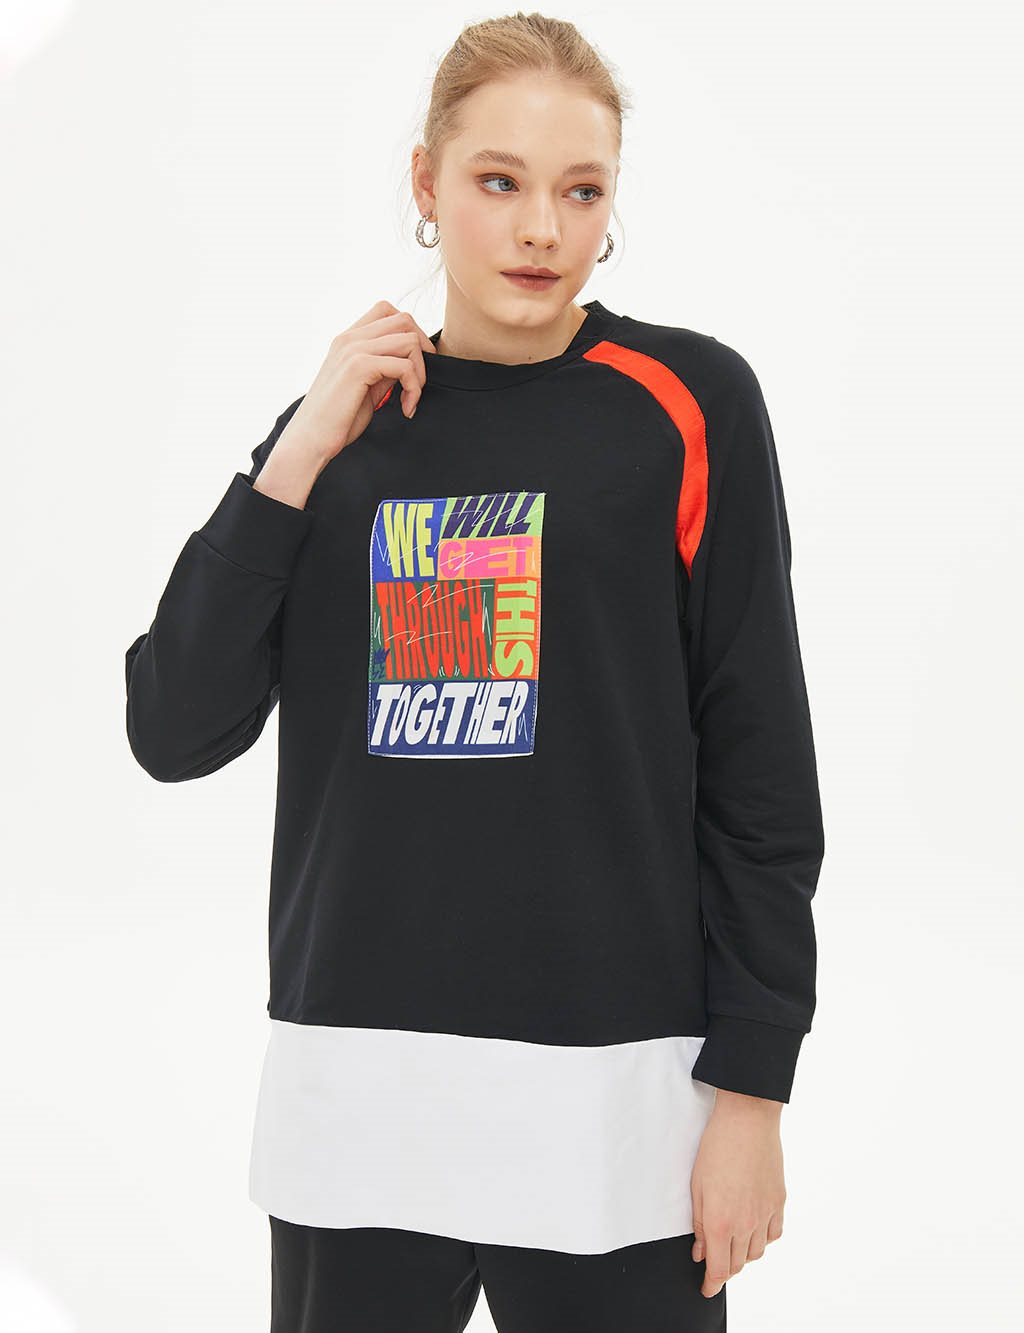 Slogan Printed Color Block Sweatshirt Navy